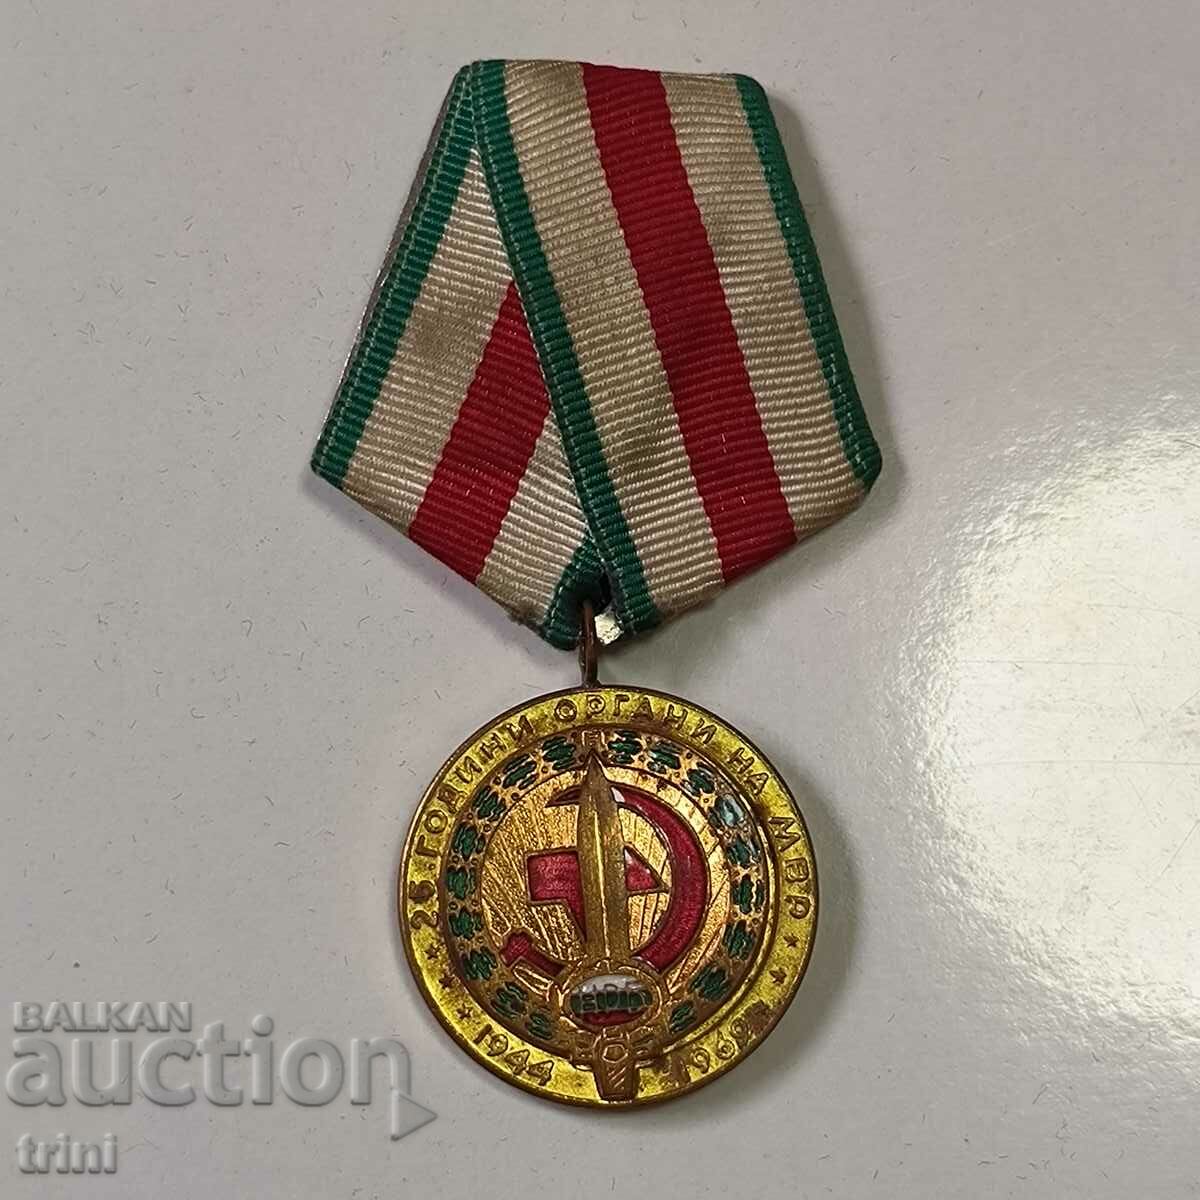 Μετάλλιο 25 χρόνια.ΣΩΜΑΤΑ ΤΟΥ ΜΙΑ 1969